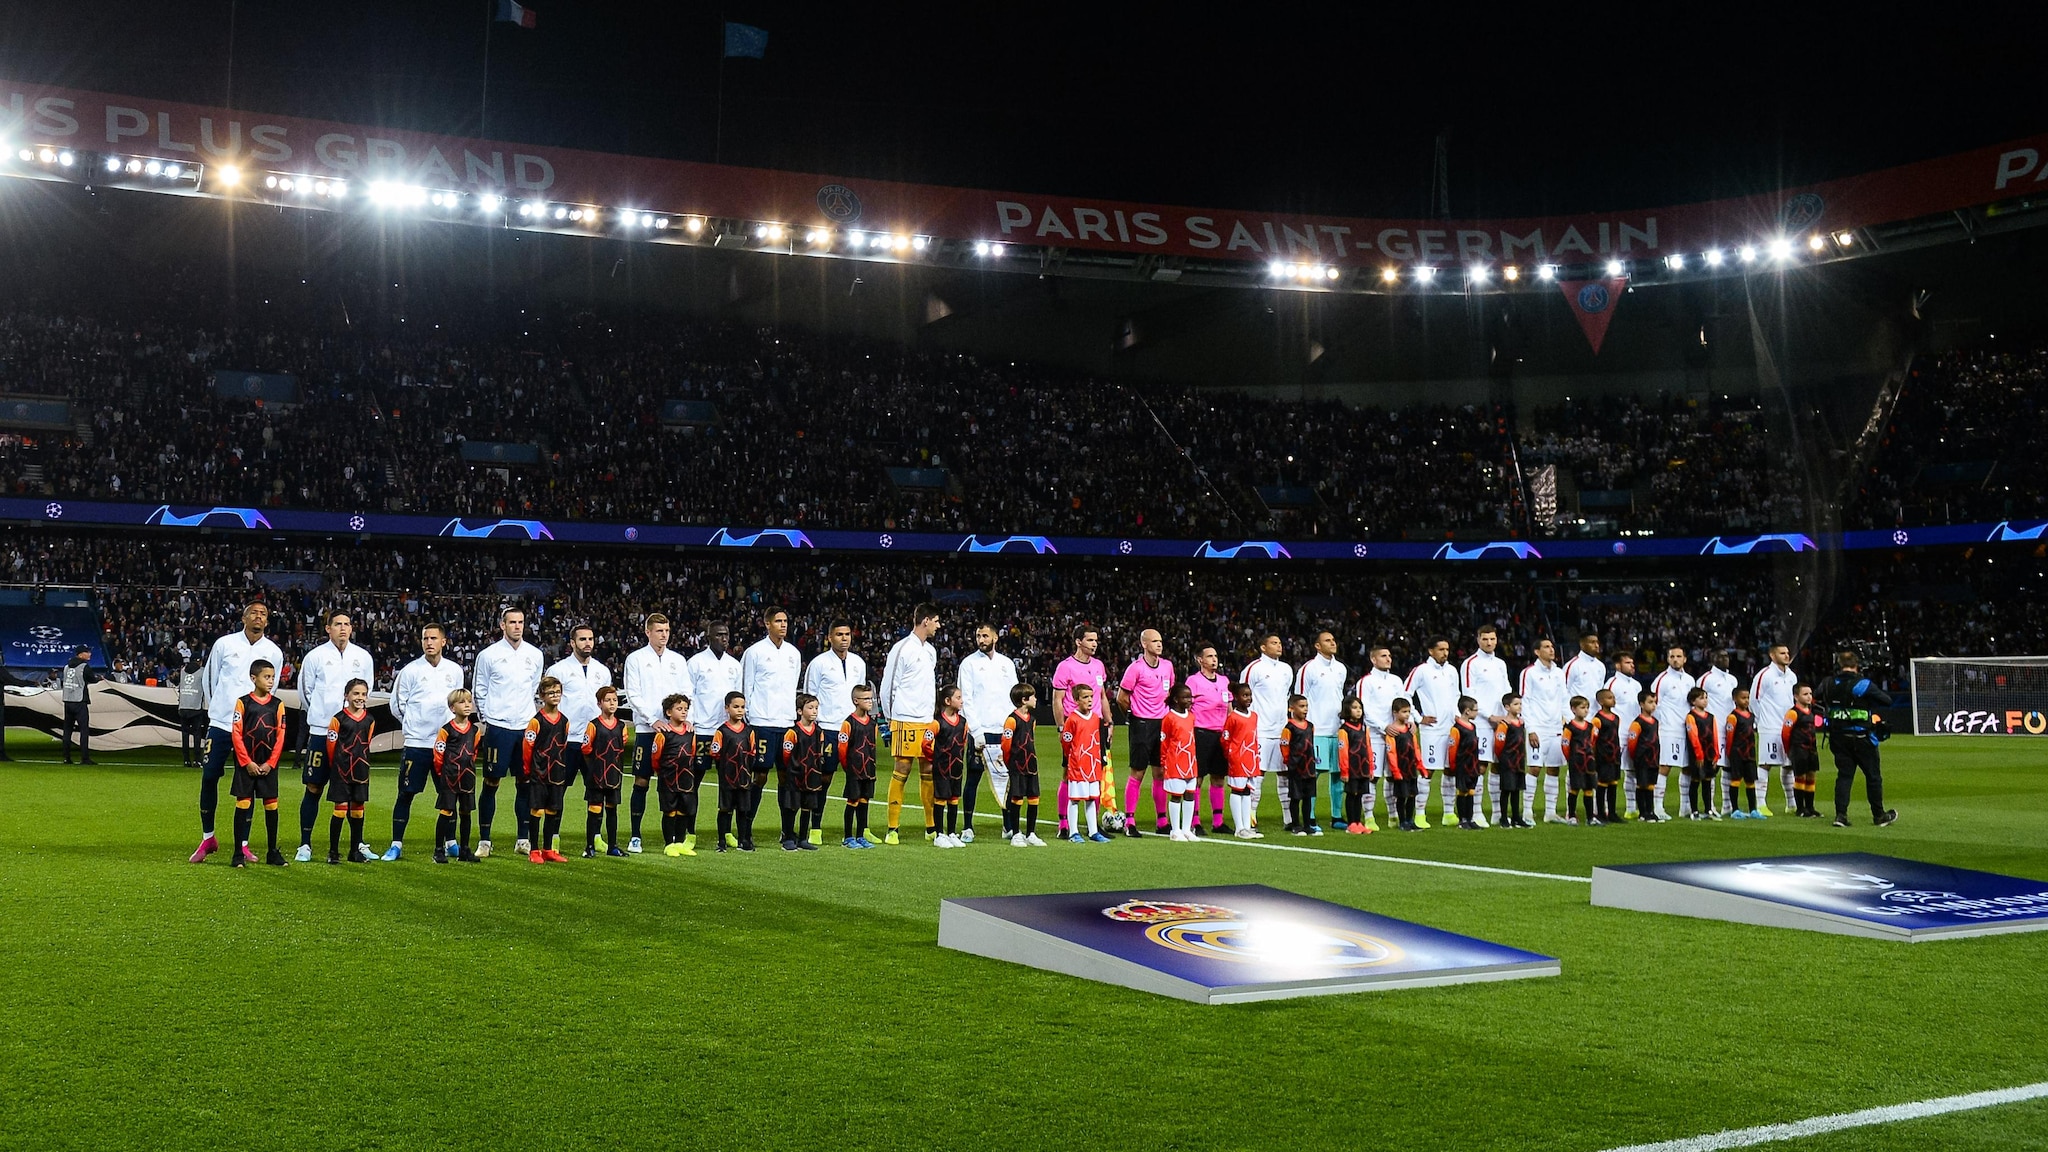 UEFA Champions League anthem: lyrics, background, facts